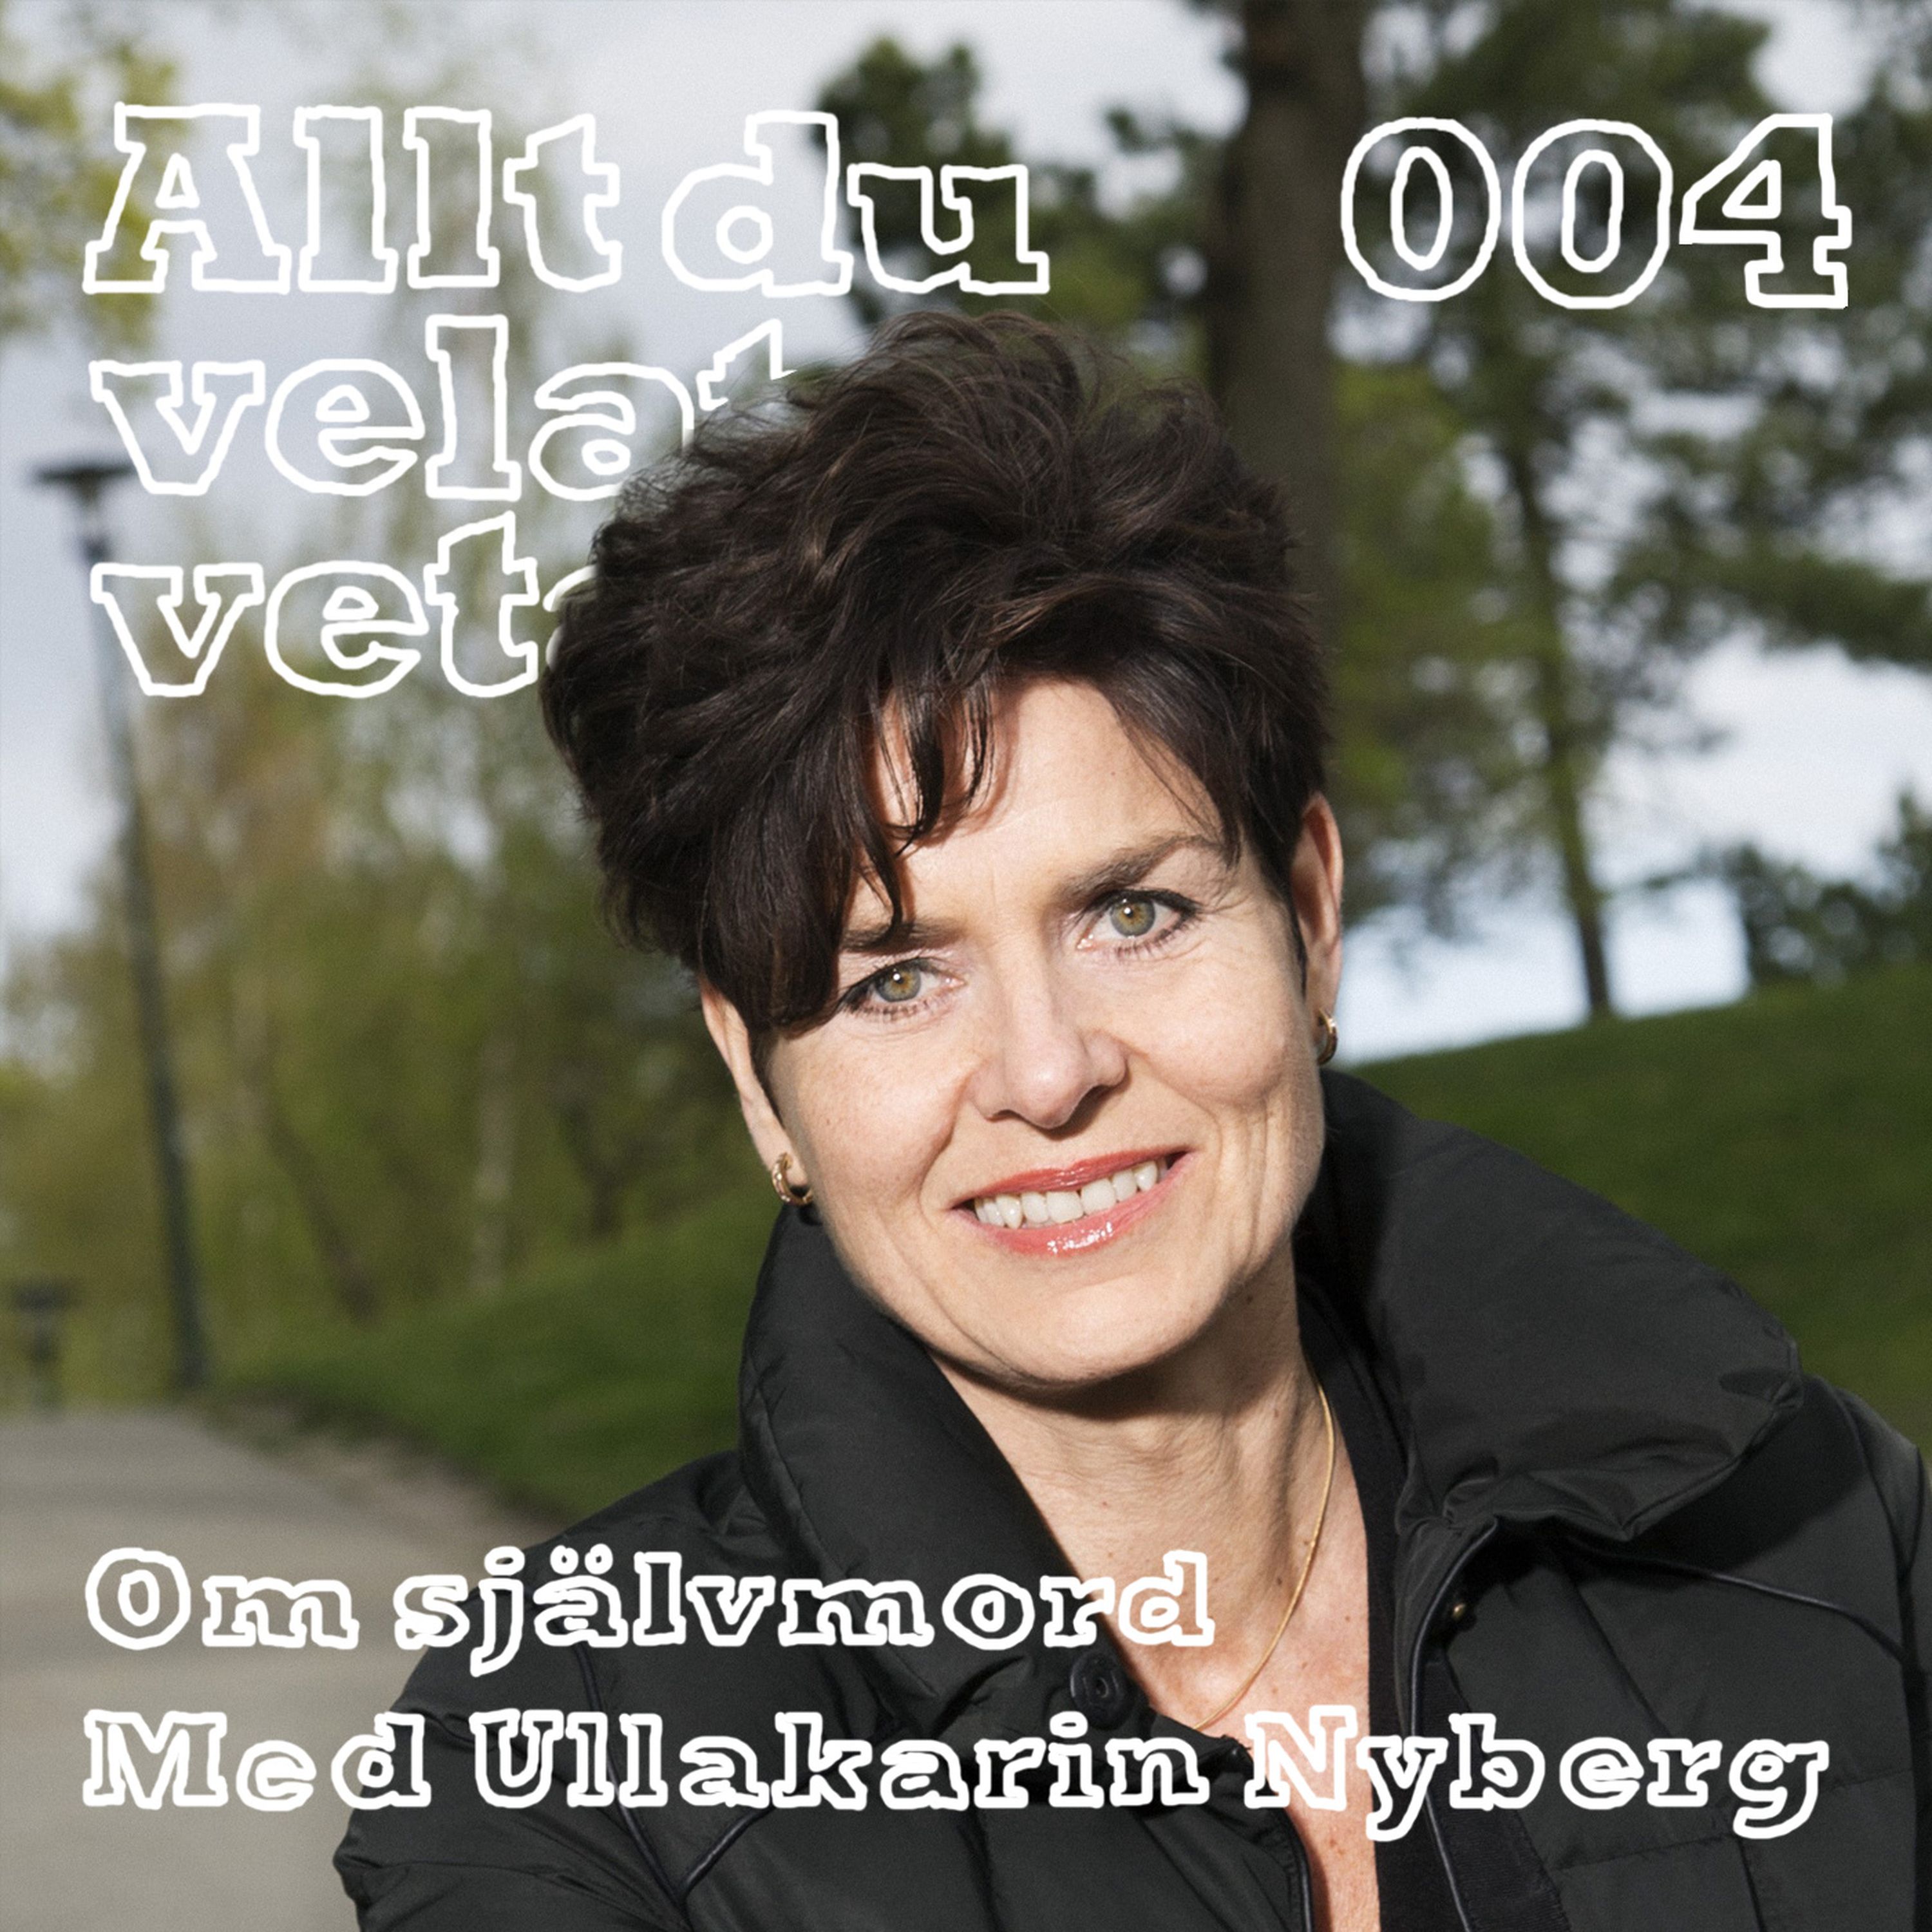 004 Om självmord med Ullakarin Nyberg